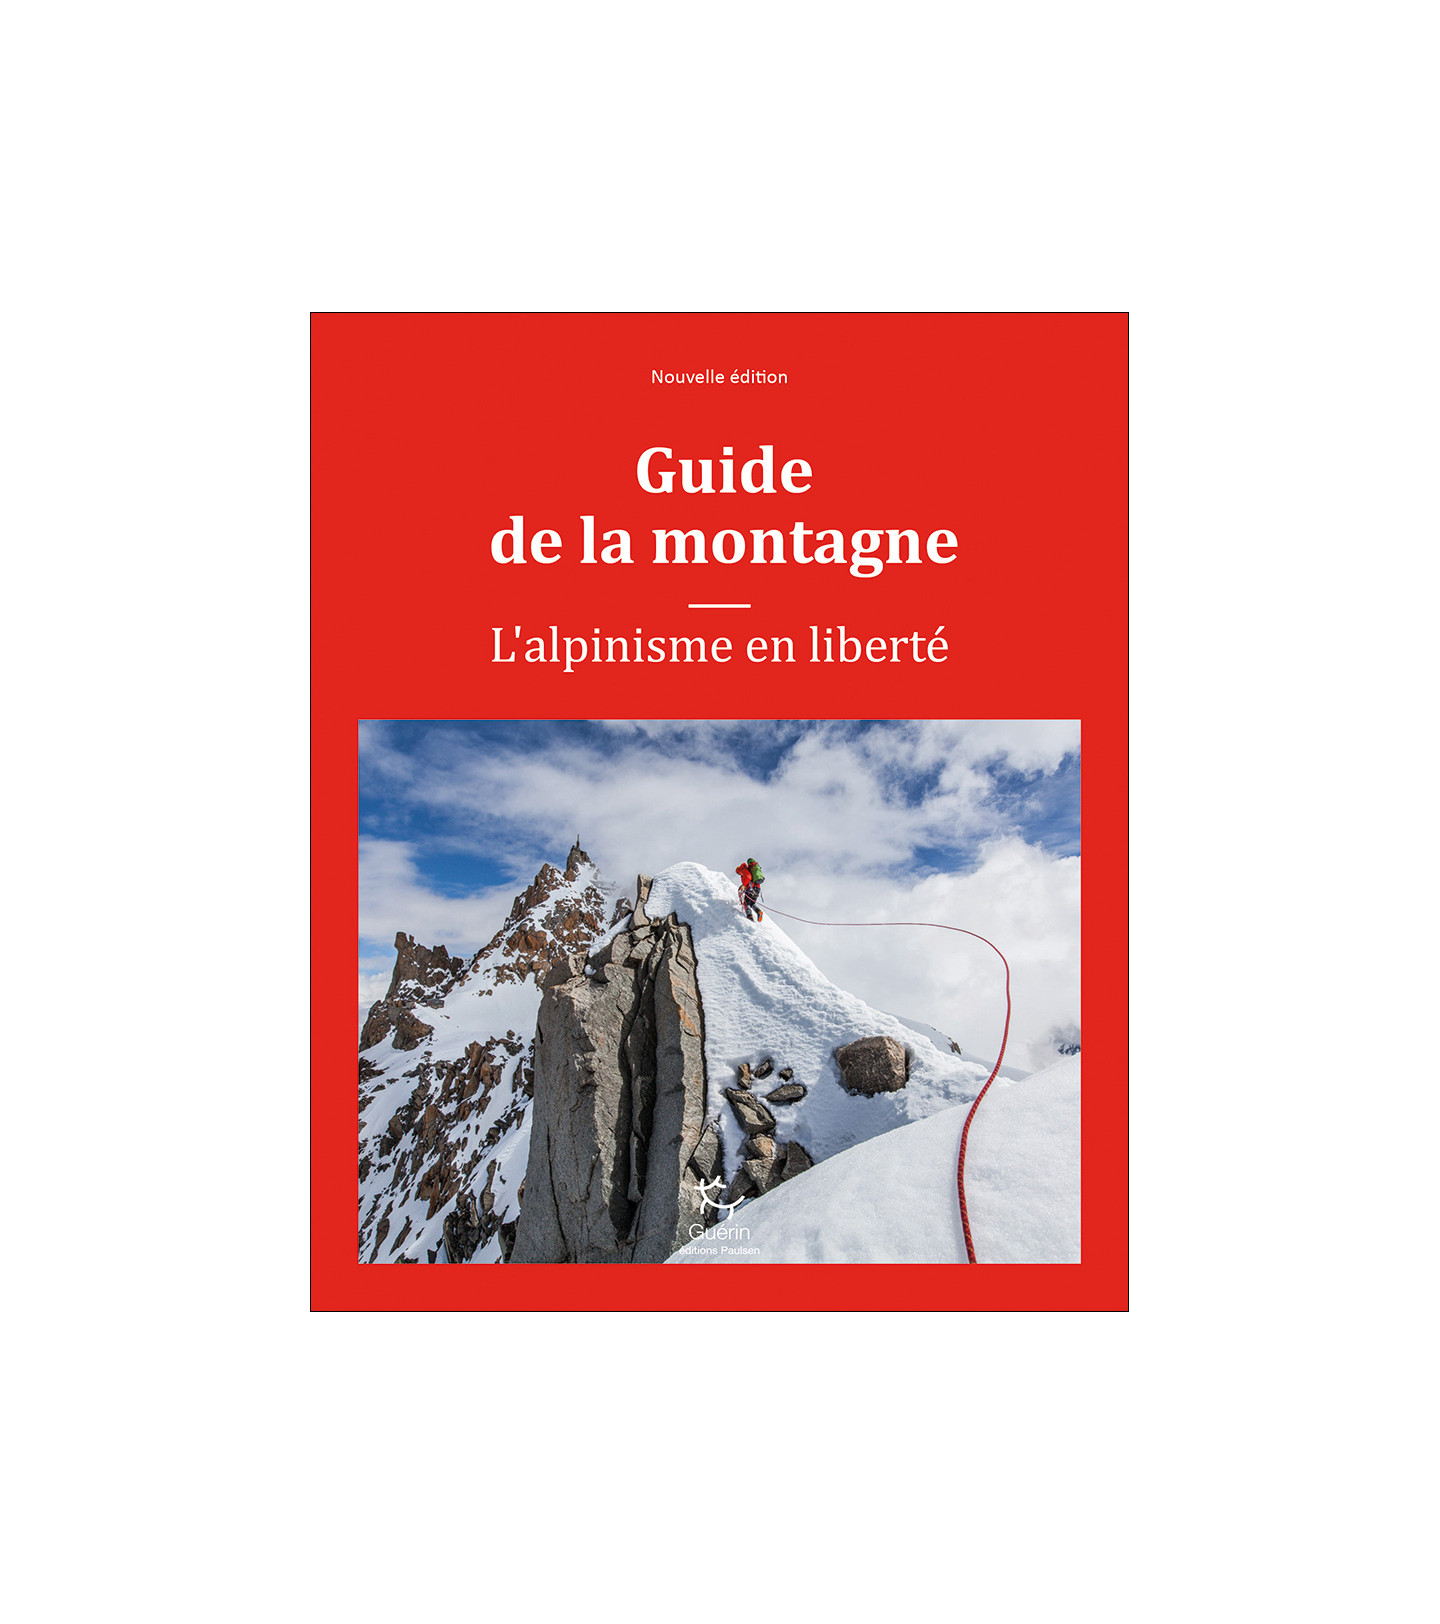 Guide de la montagne | Guérin| Guide d’alpinisme